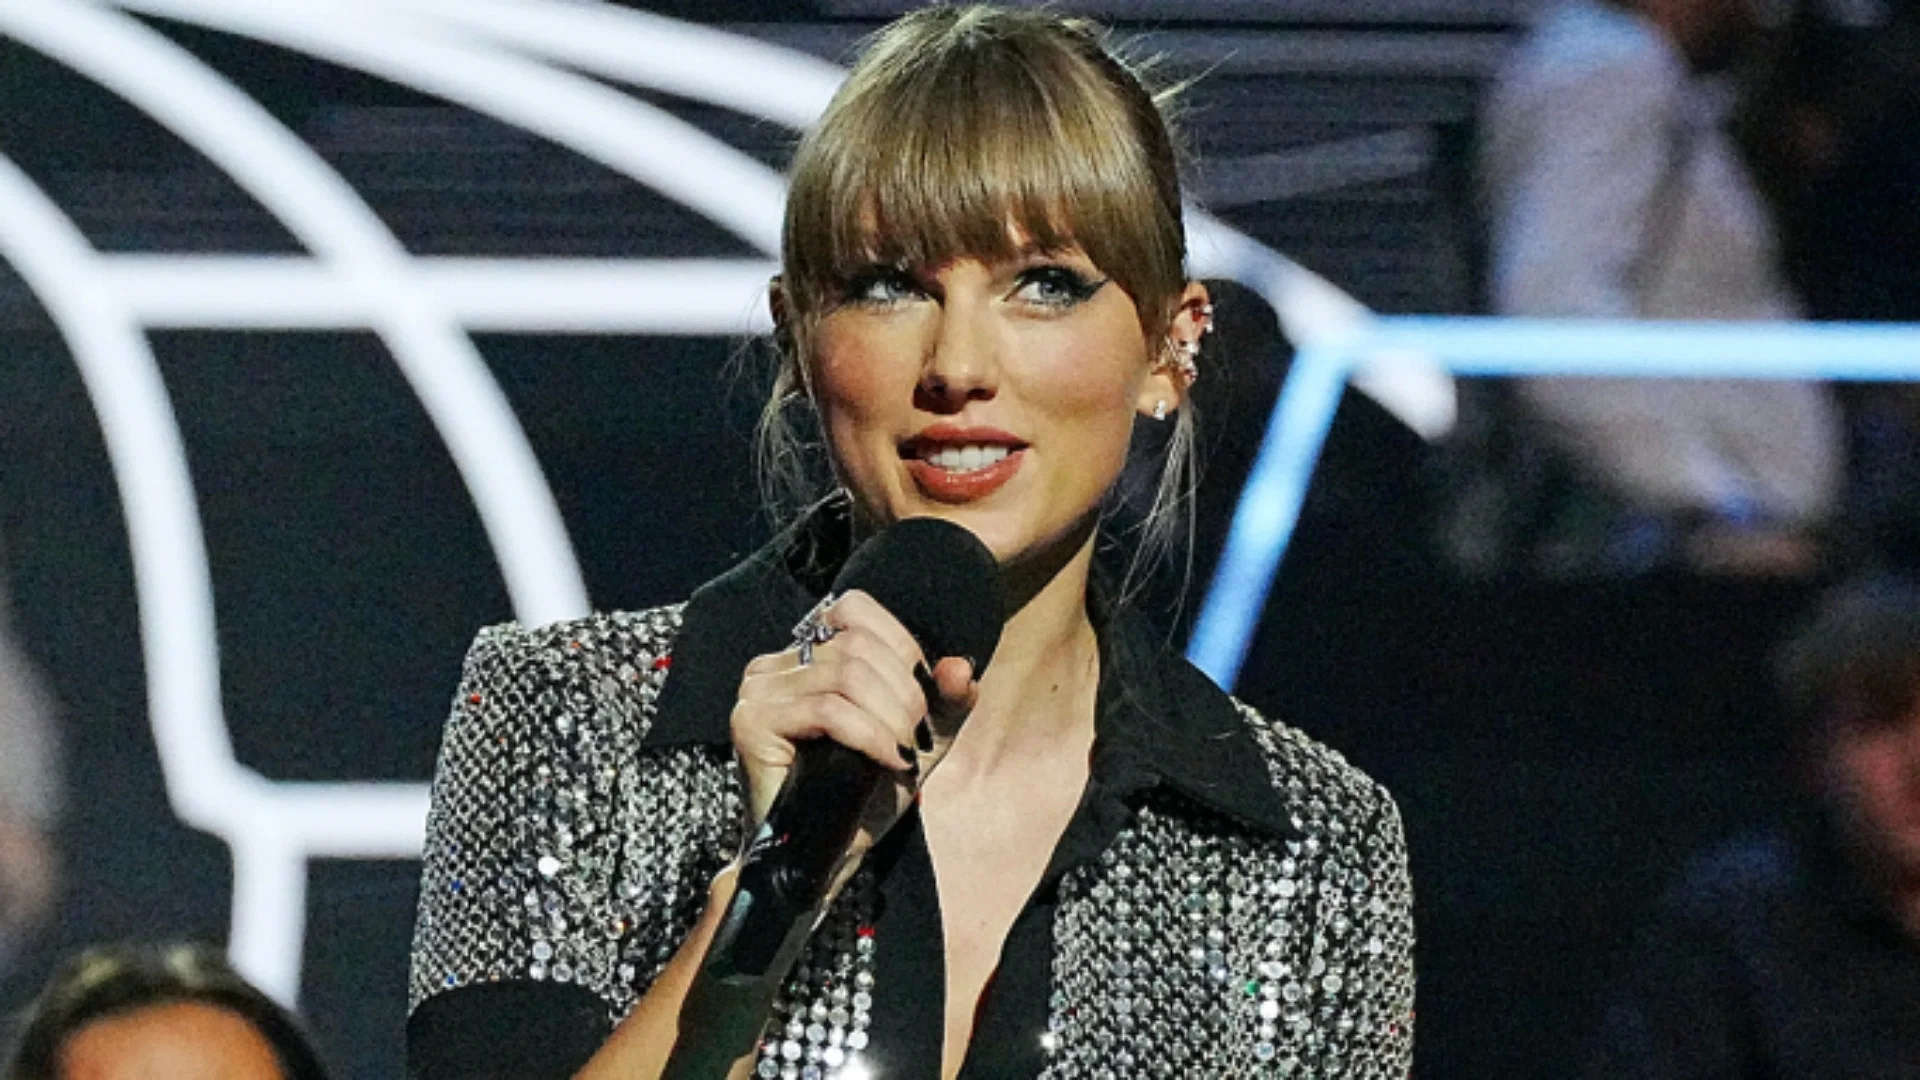 'ये पल मैं कभी नहीं भूलूंगी...' Taylor Swift ने म्यूजिकल इवेंट से मचाई धूम, फैंस के लिए शेयर किया स्पेशल मैसेज